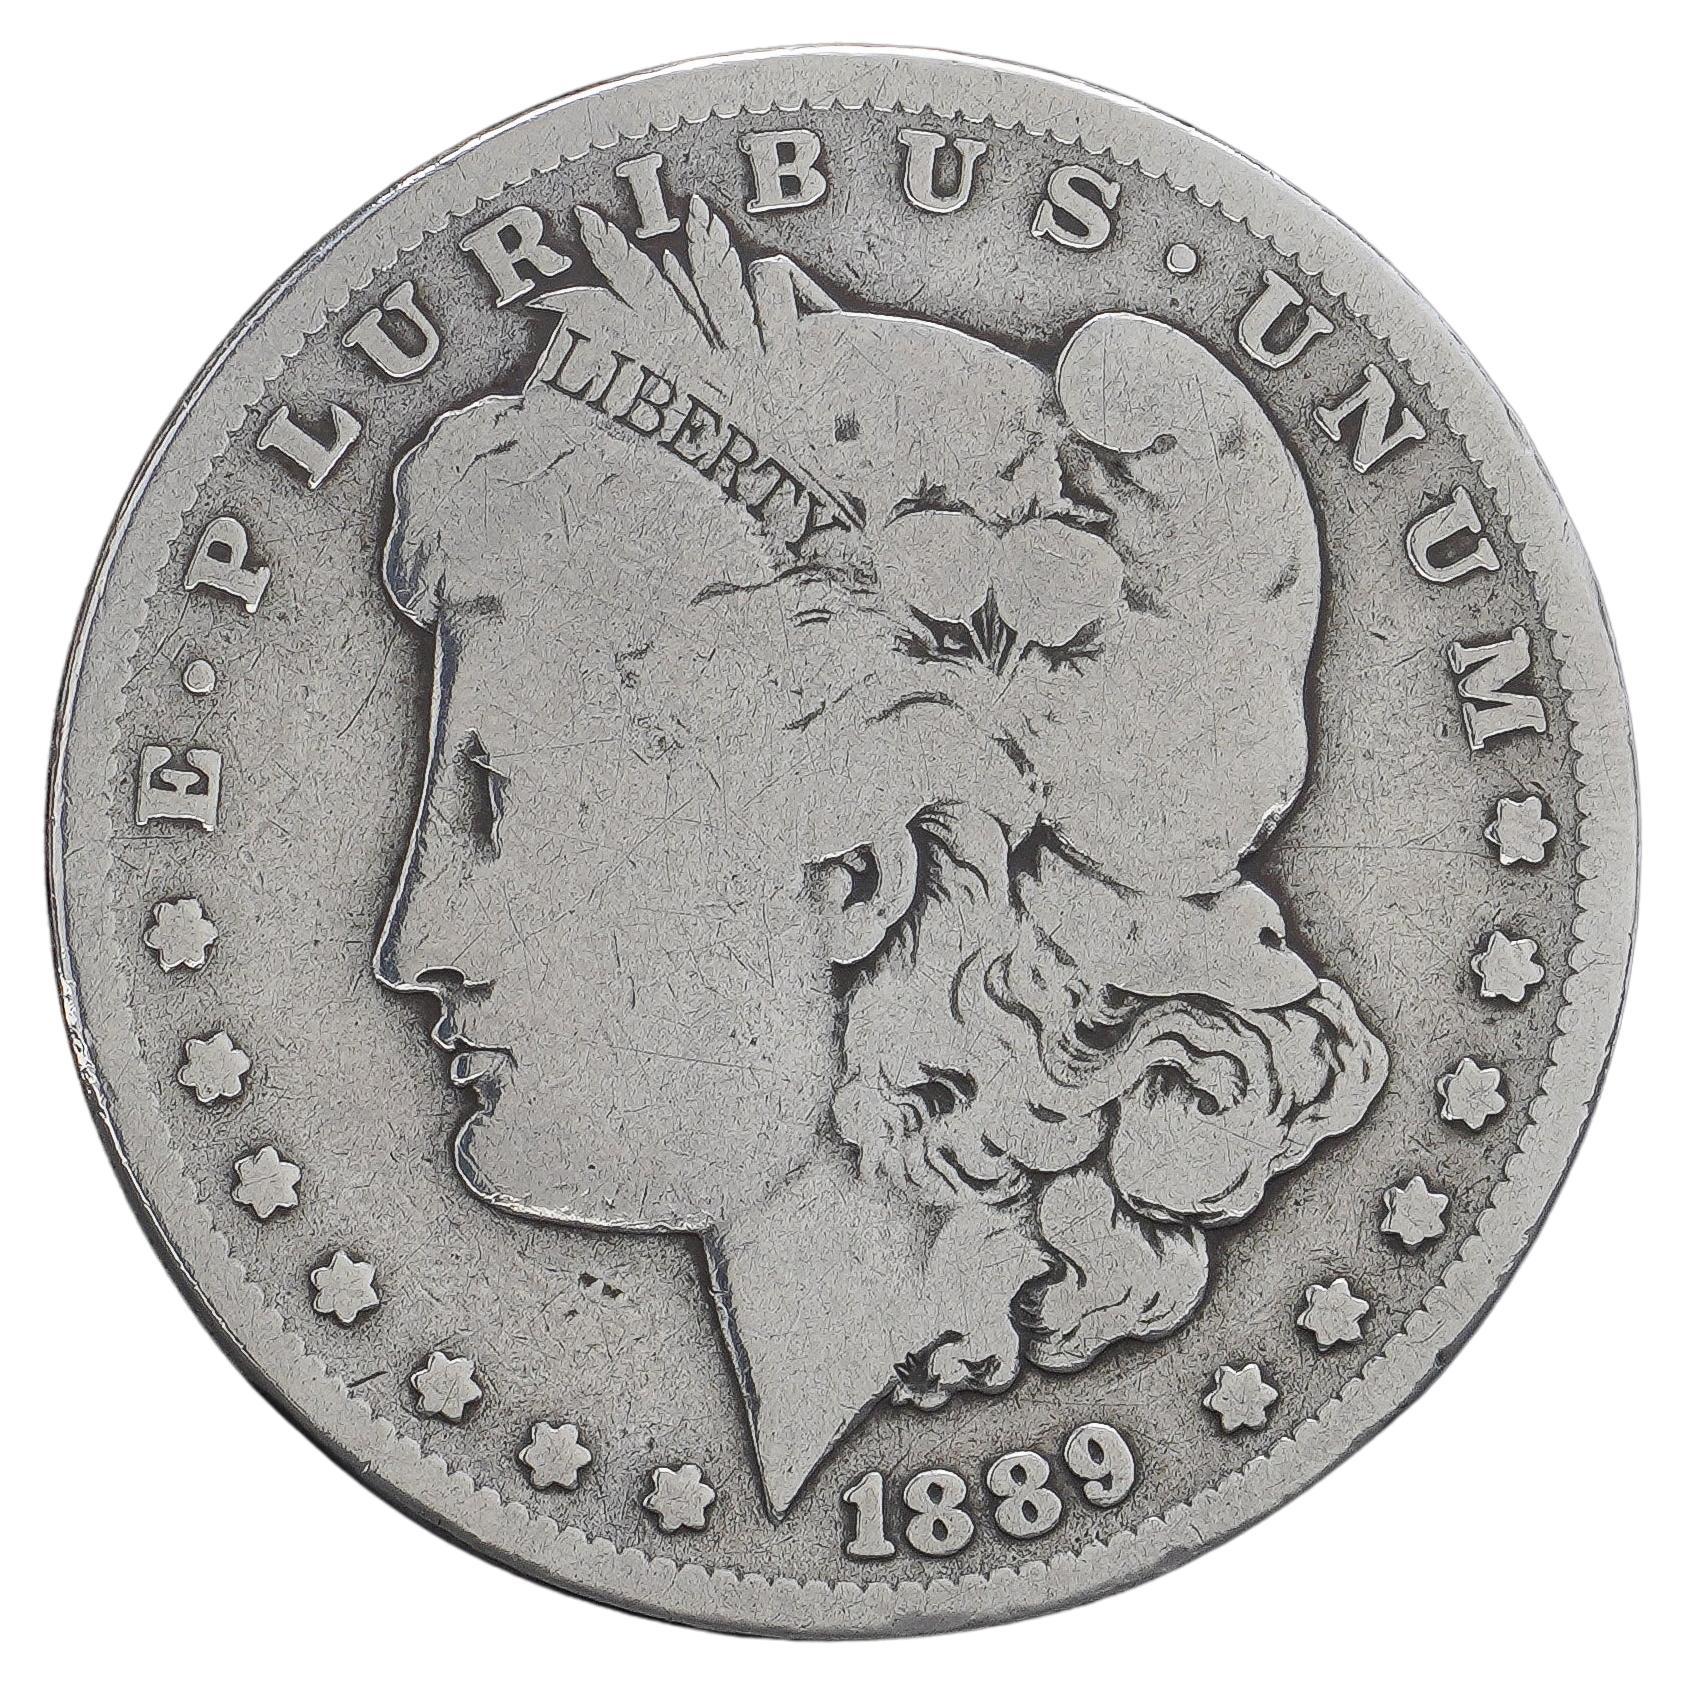 Morgan O Dollar antique 1889